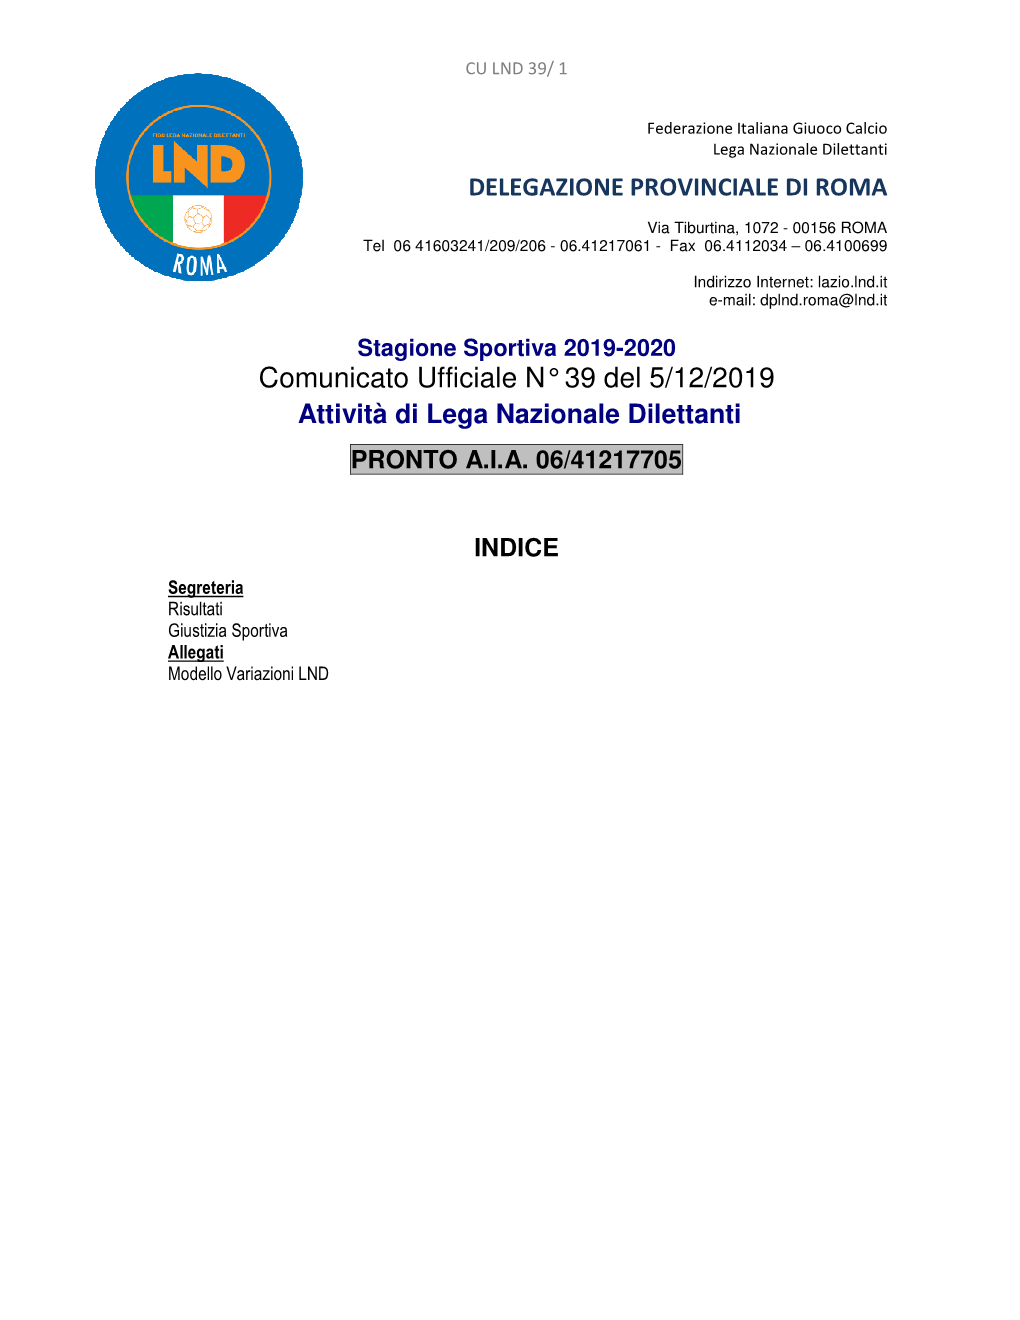 Comunicato Ufficiale N° 39 Del 5/12/2019 Attività Di Lega Nazionale Dilettanti PRONTO A.I.A